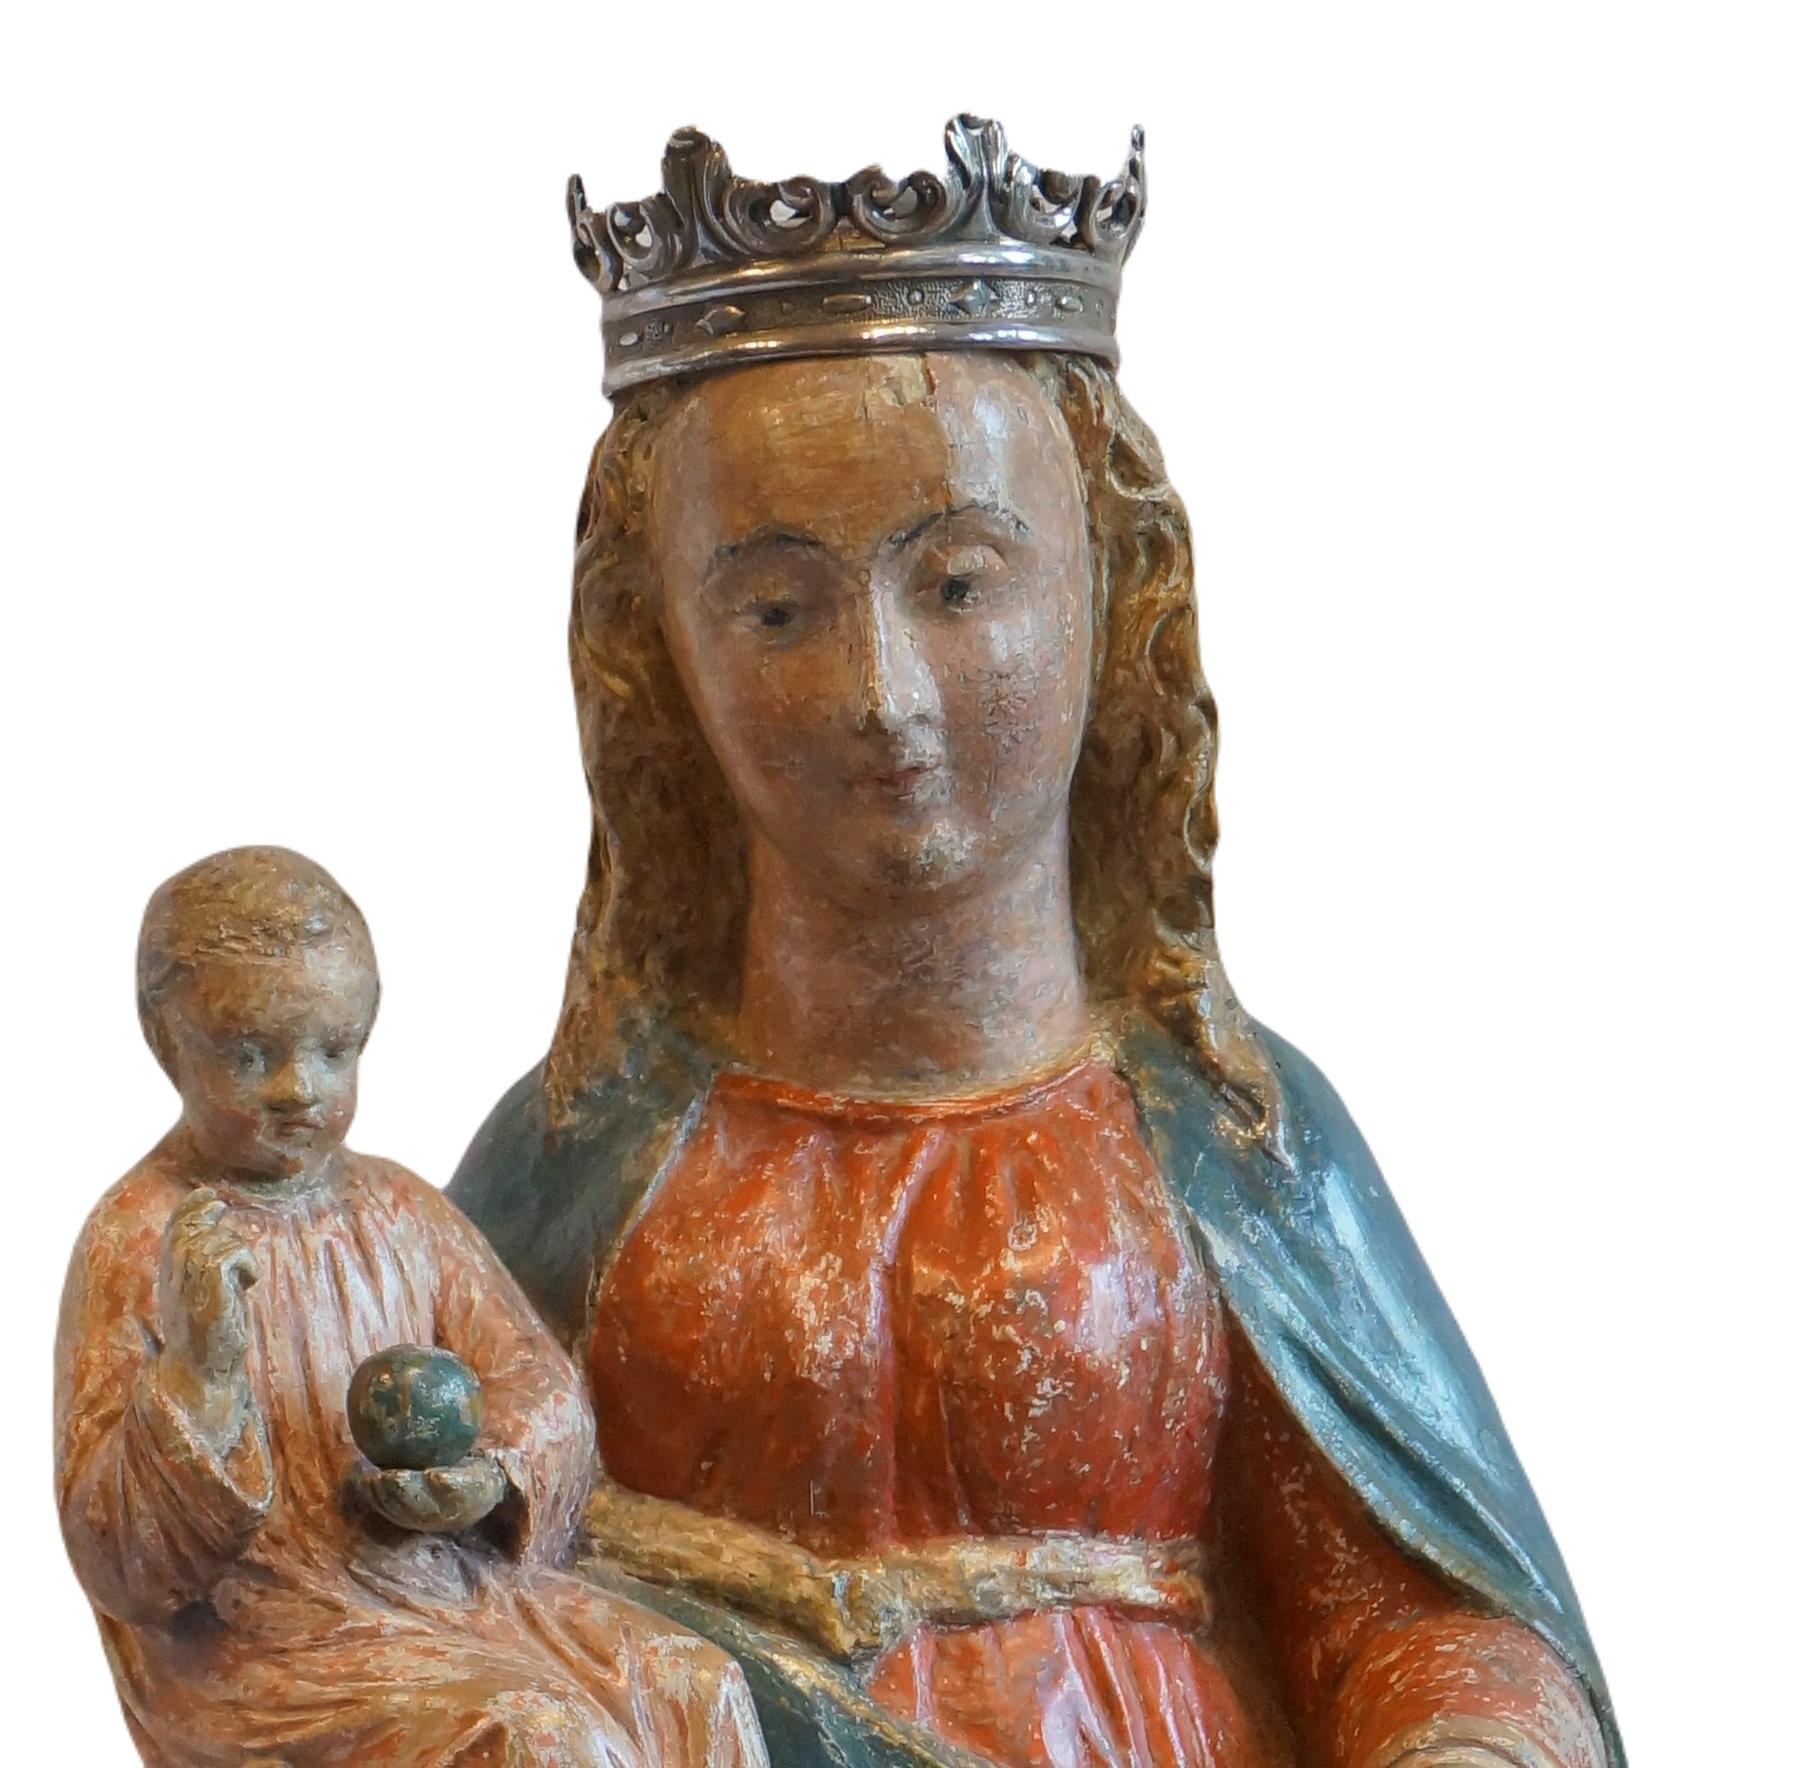 Sculpture de la mère Marie avec l'enfant Jésus.
Marie a l'enfant sur sa main droite. Jésus fait un geste de bénédiction et porte un petit globe. (signe de son pouvoir sur le monde).
Mère Marie tient un raisin dans sa main gauche.
Les visages de Mère